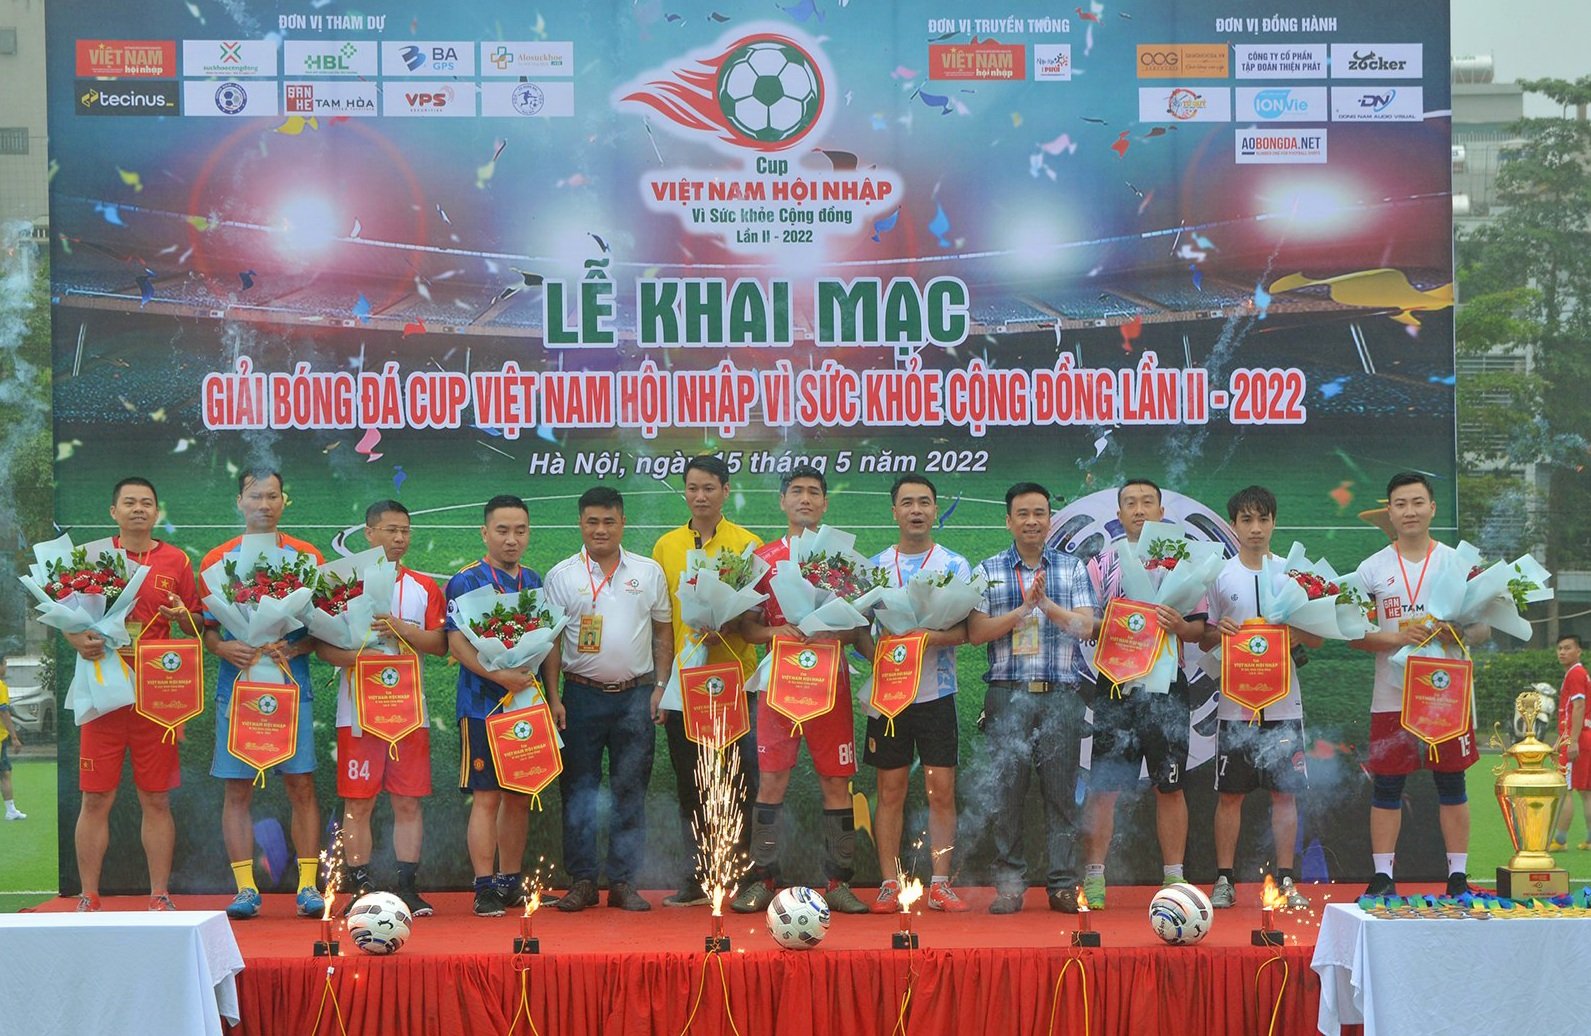 Khai mạc Cup Việt Nam Hội nhập Vì sức khỏe cộng đồng lần II - 2022